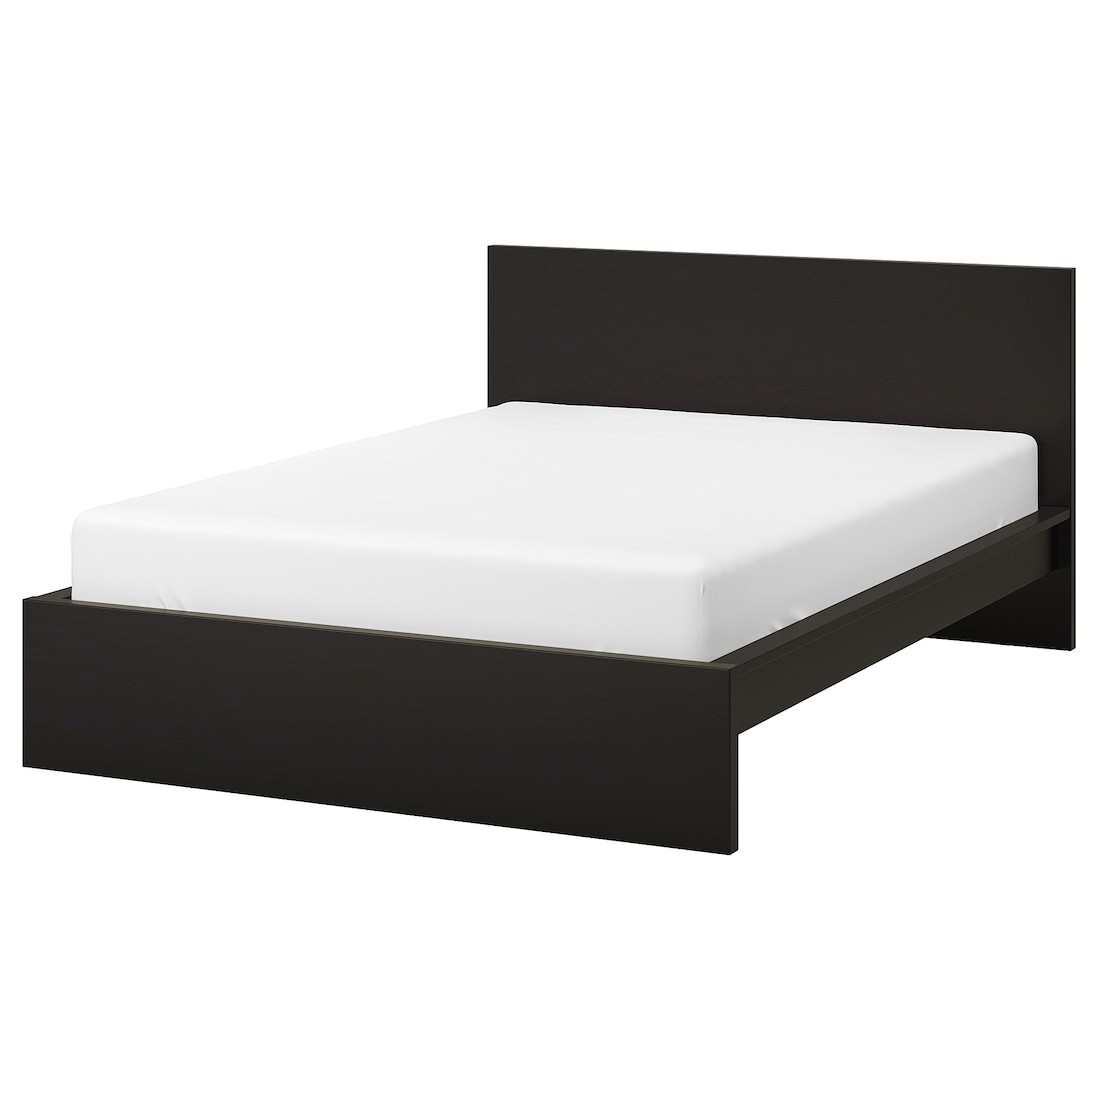 IKEA MALM МАЛЬМ Кровать двуспальная, высокий, черно-коричневый / Leirsund, 160x200 см 79019841 790.198.41